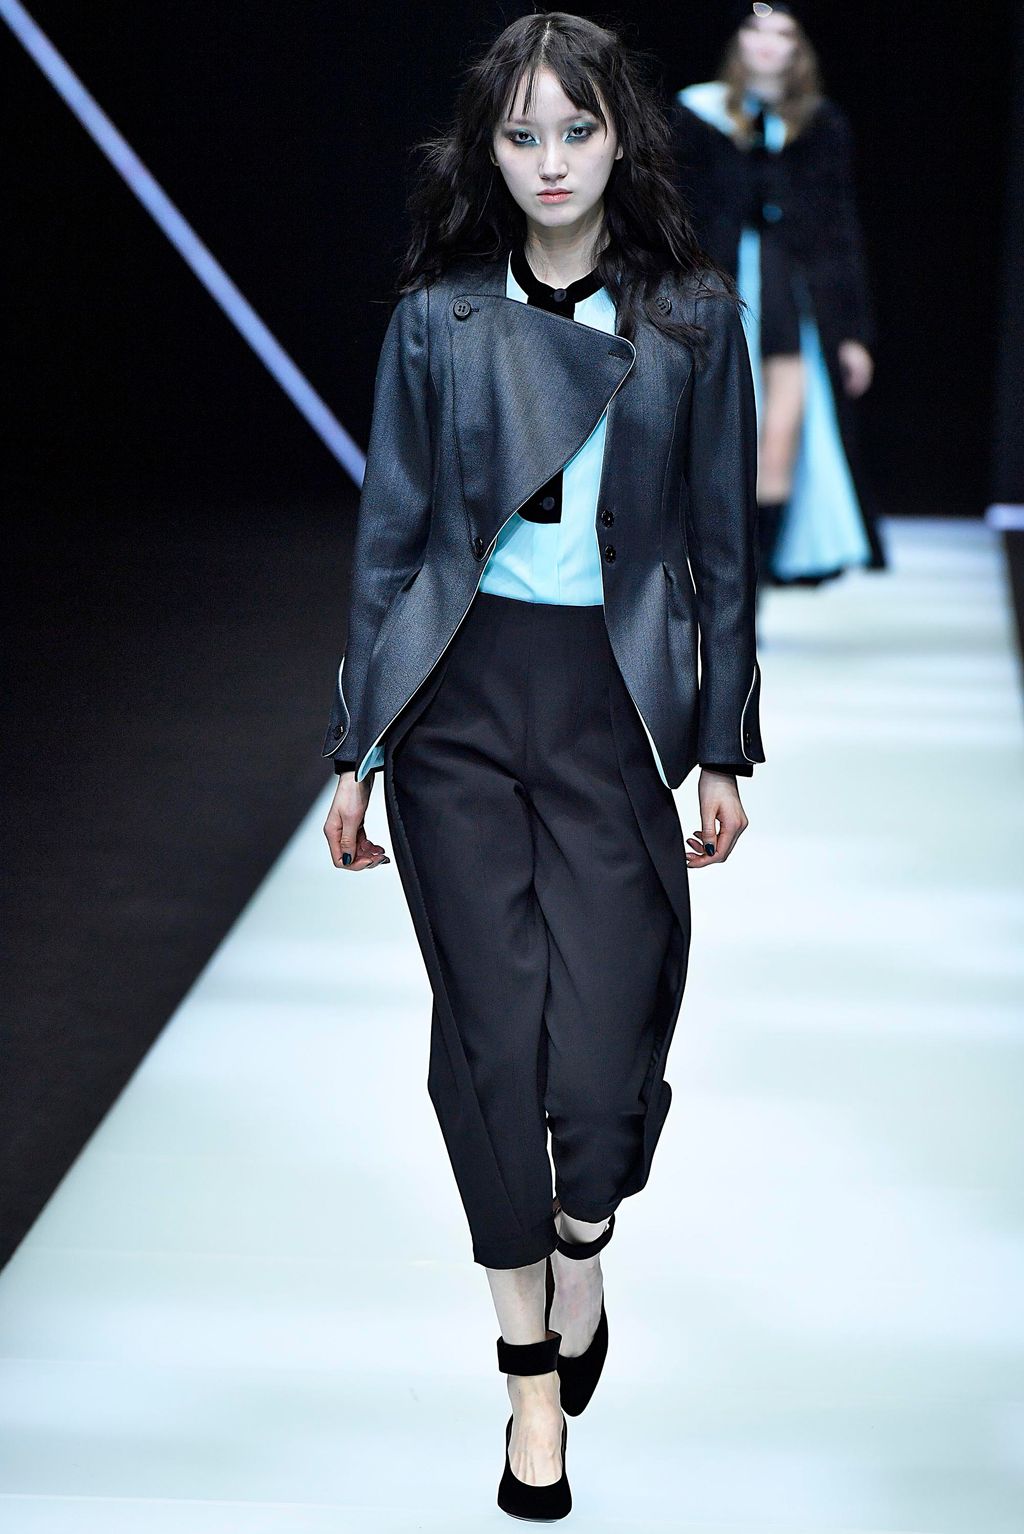 Emporio Armani F/W 18 womenswear #24 - Tagwalk: The Fashion Search Engine